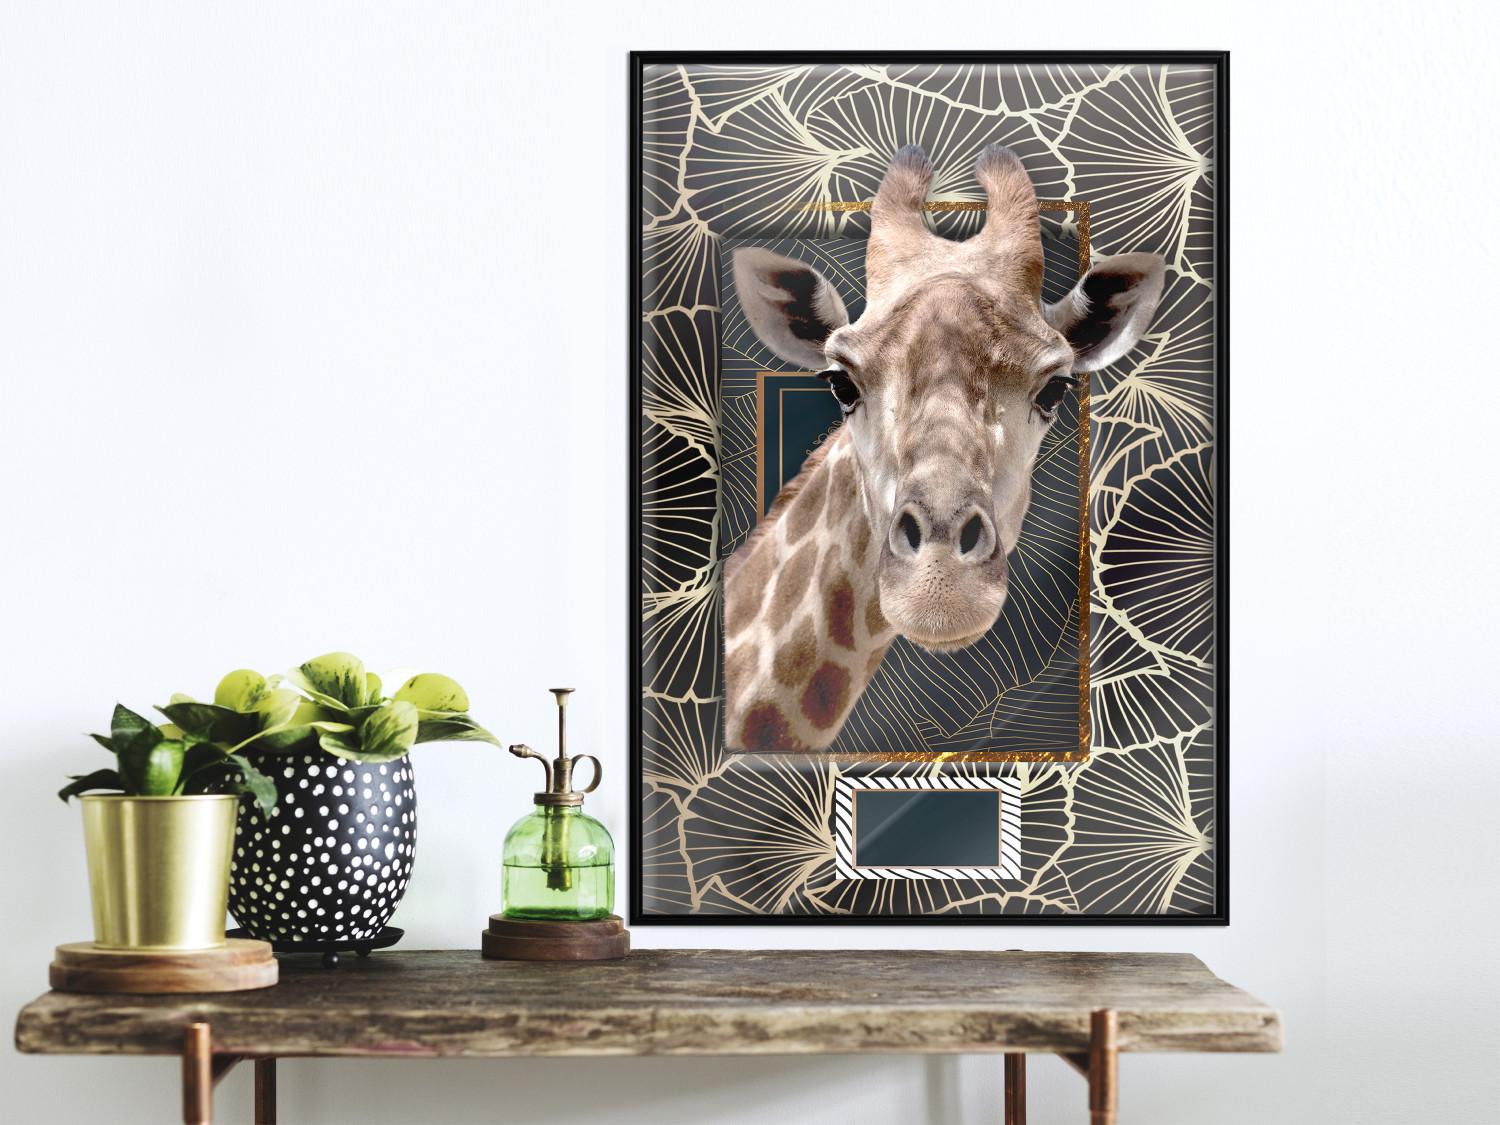 Set de poster Giraffe [Poster]